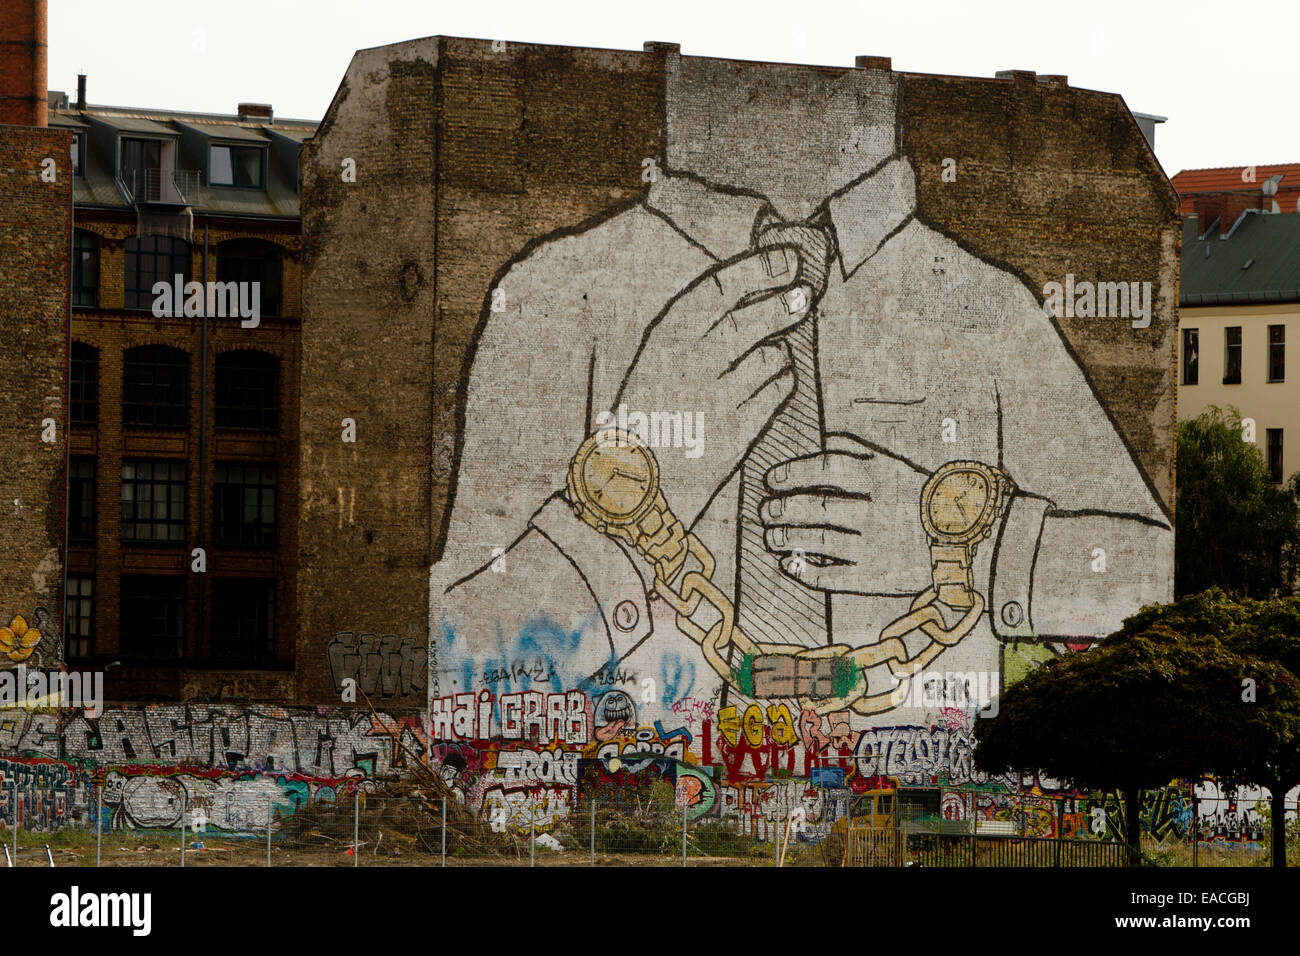 Edificio de Arte graffiti anti capitalismo muro de Berlín Foto de stock